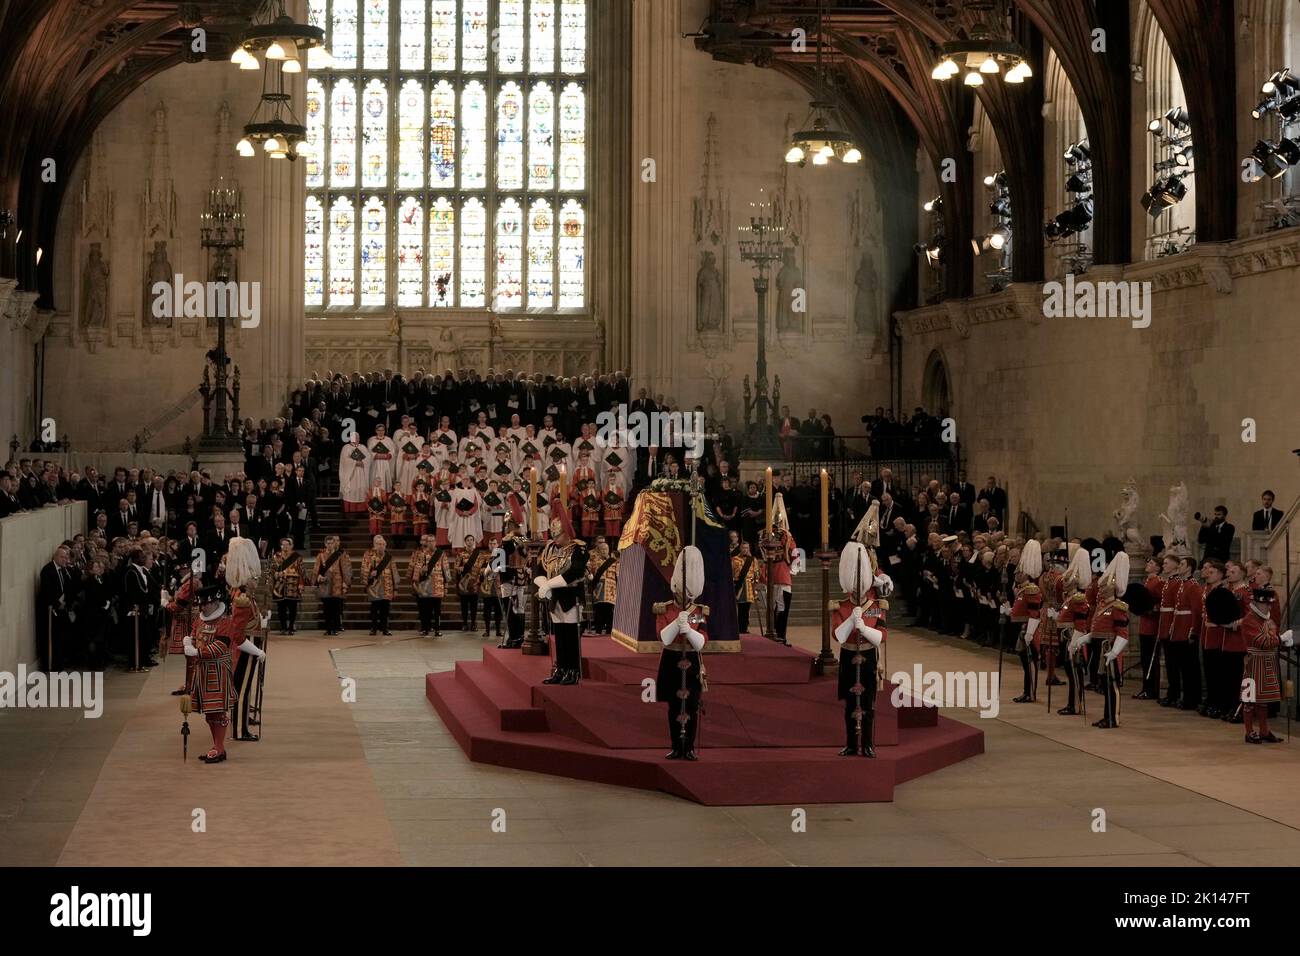 Der Sarg von Königin Elizabeth II. In der Westminster Hall, London, wo er vor ihrer Beerdigung am Montag in einem Zustand liegen wird. Bilddatum: Mittwoch, 14. September 2022. Stockfoto